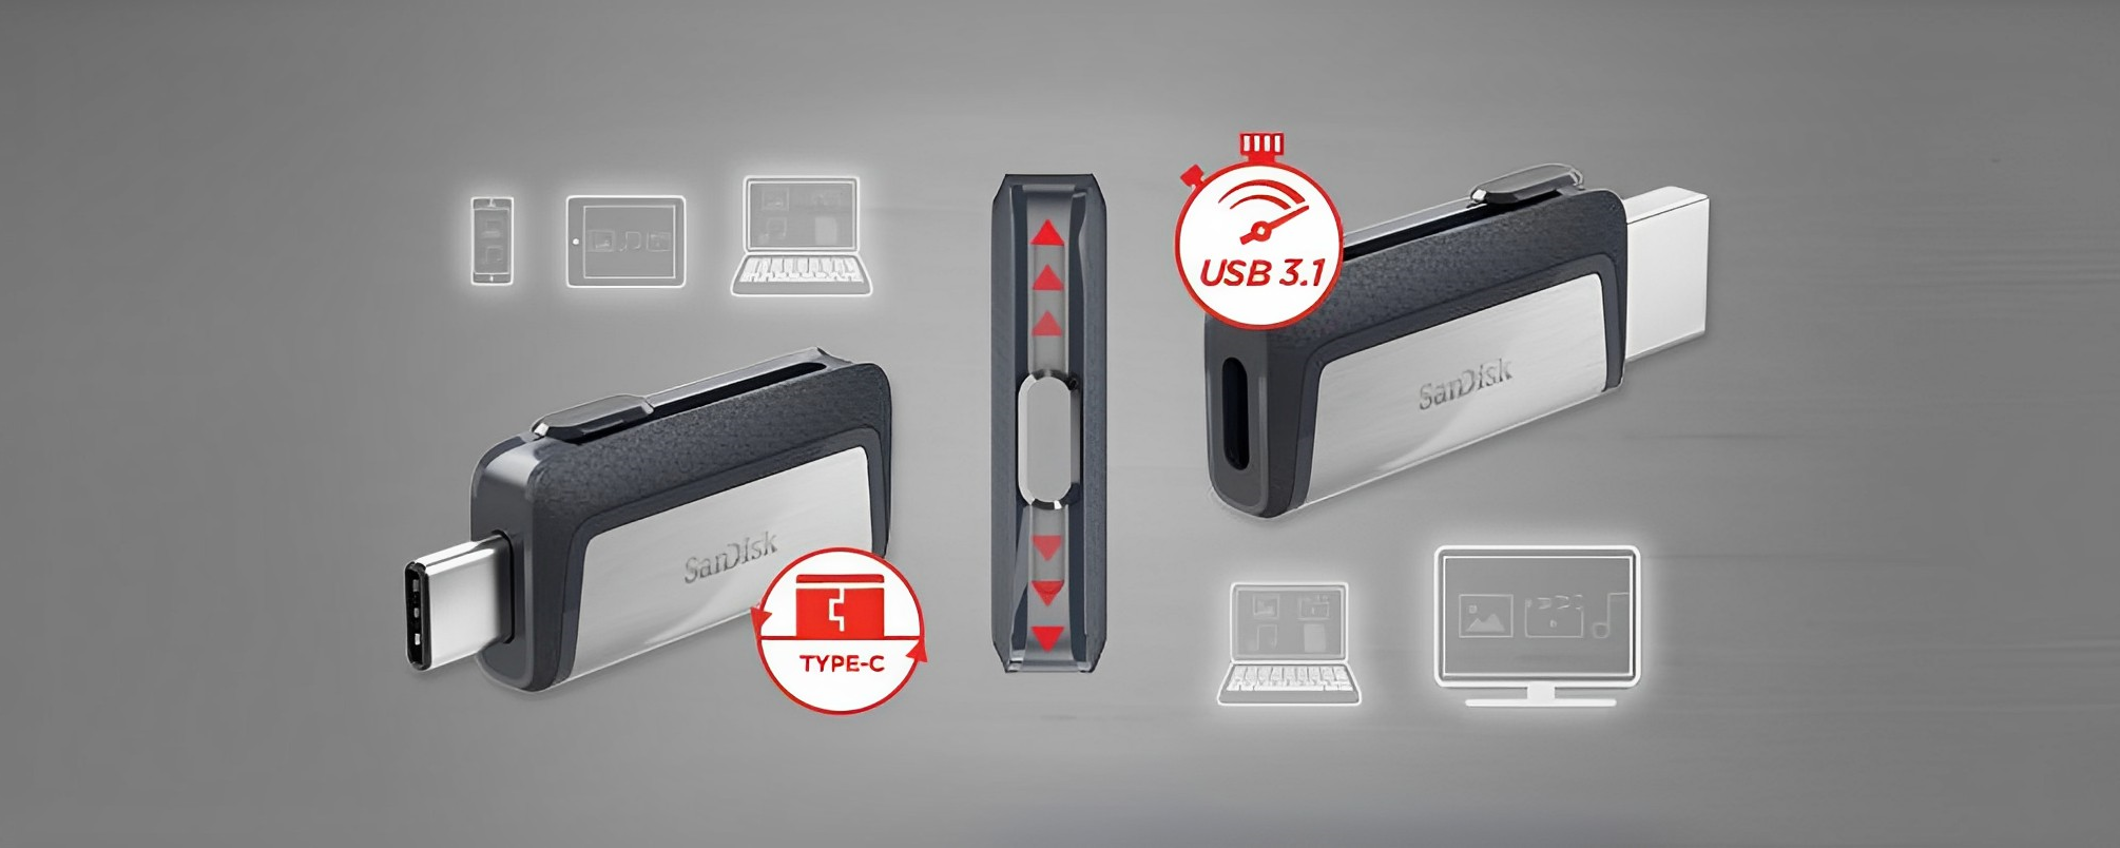 Chiavetta USB 64GB a 2 USCITE, anche Type C: la migliore a 13€